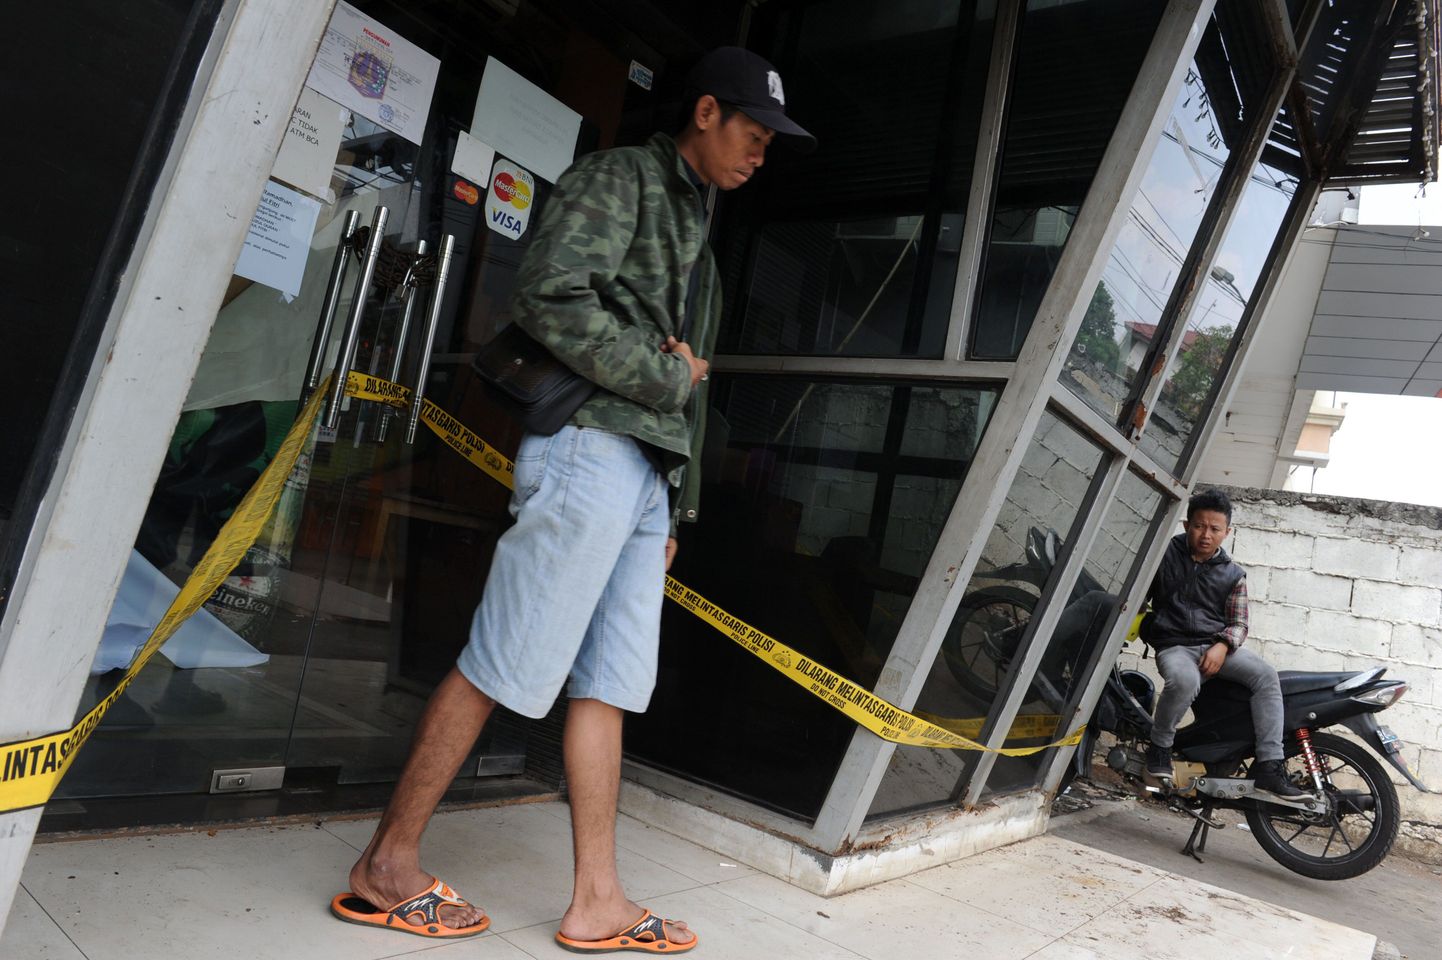 Töötajad Jakartas asuva De Mosti baari ees, mida nädalavahetusel rünnati.